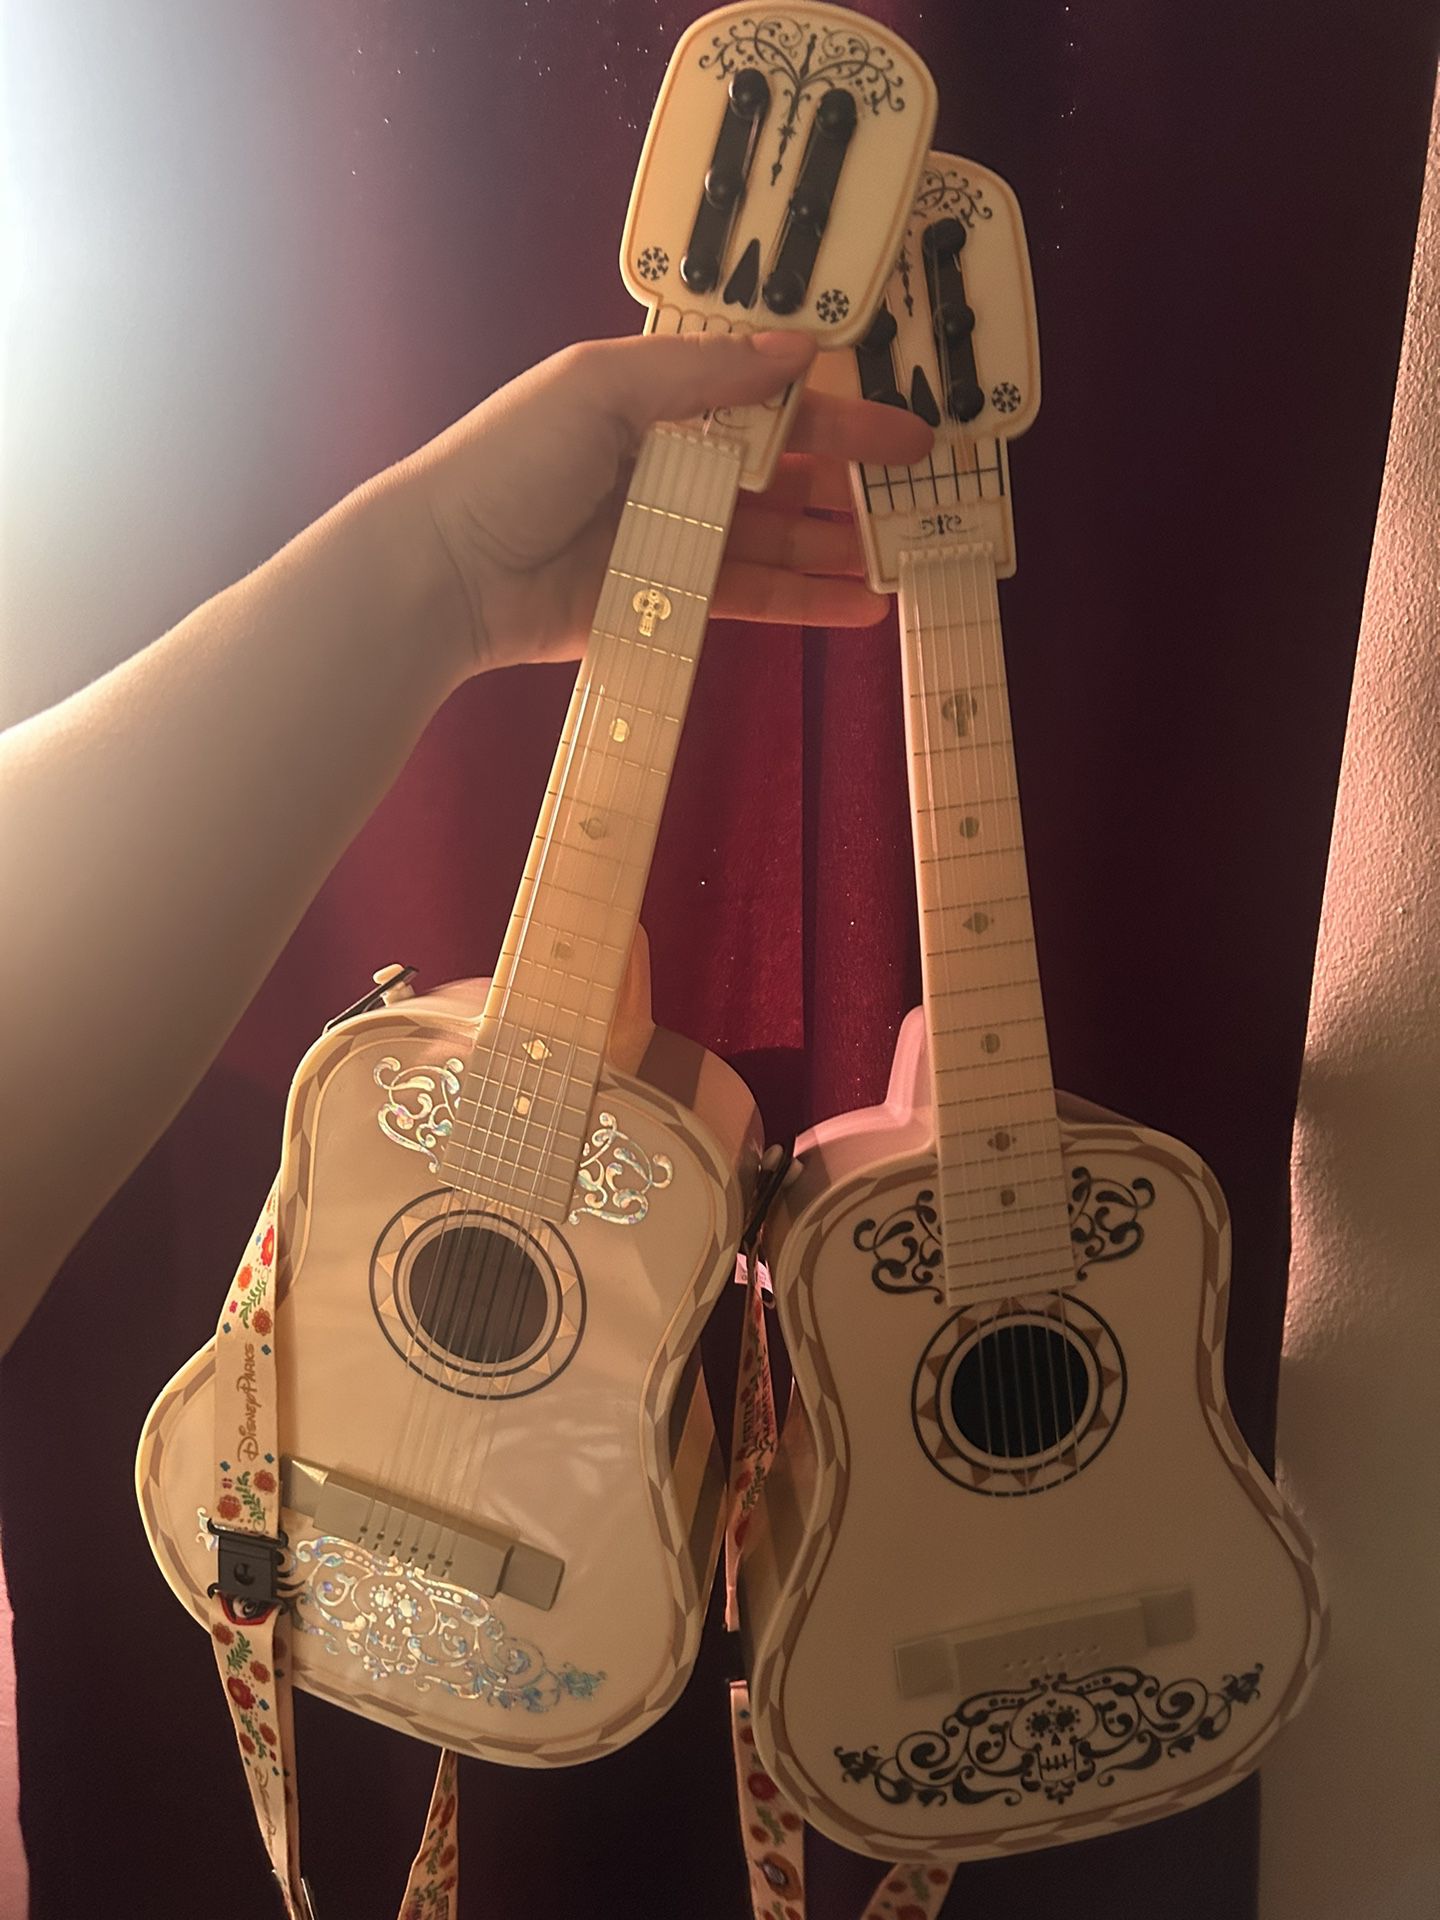 Coco guitars